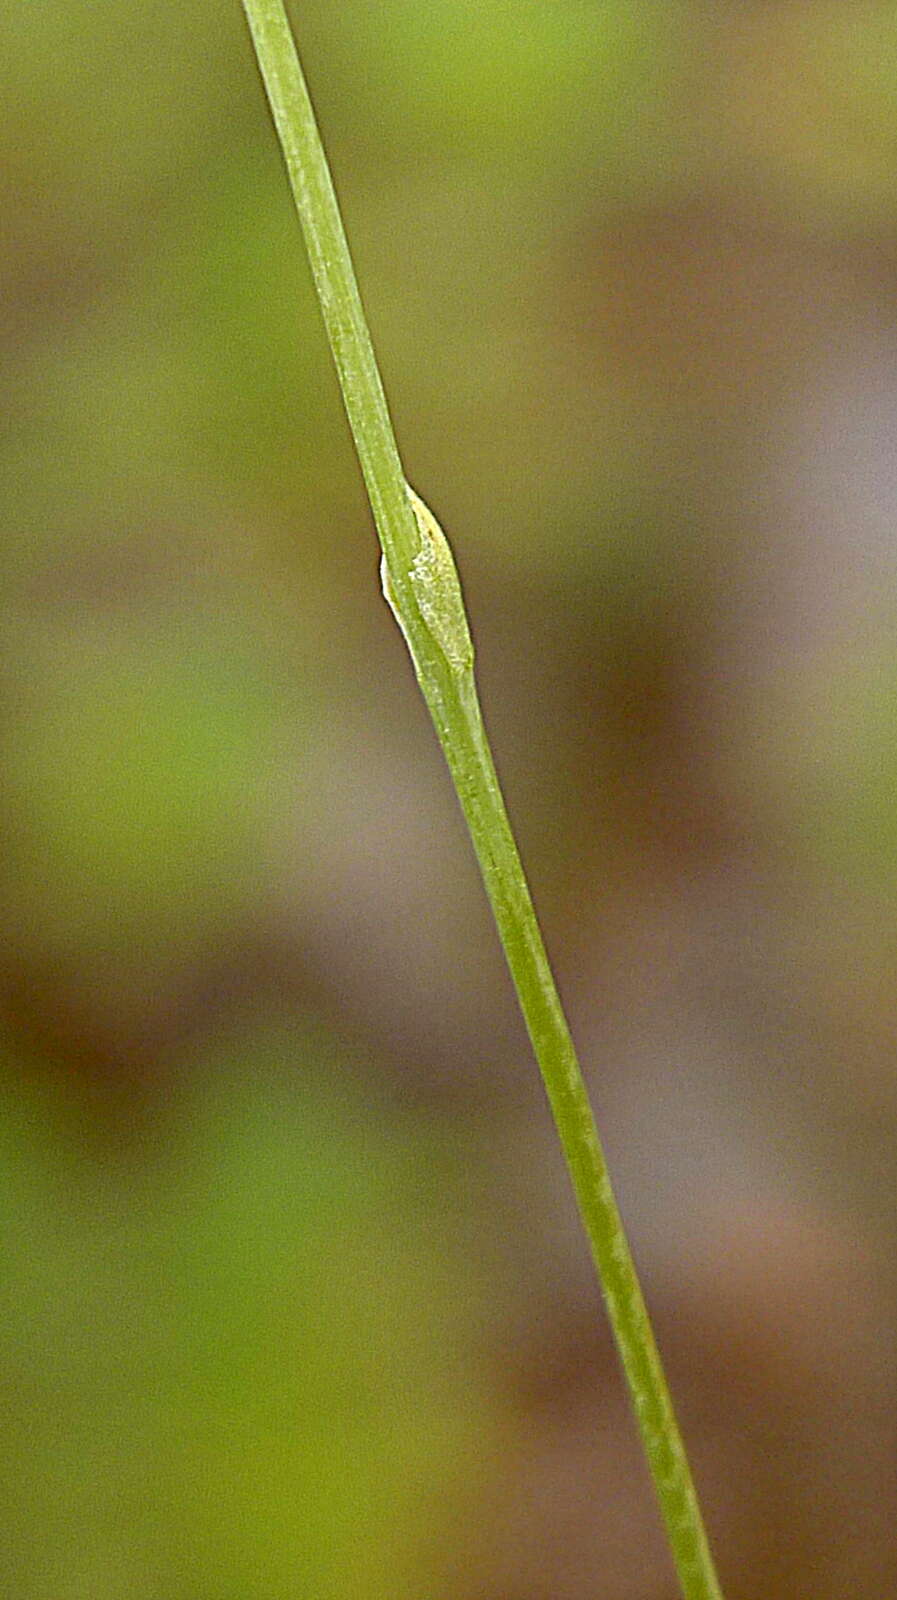 Plancia ëd Burmanniaceae